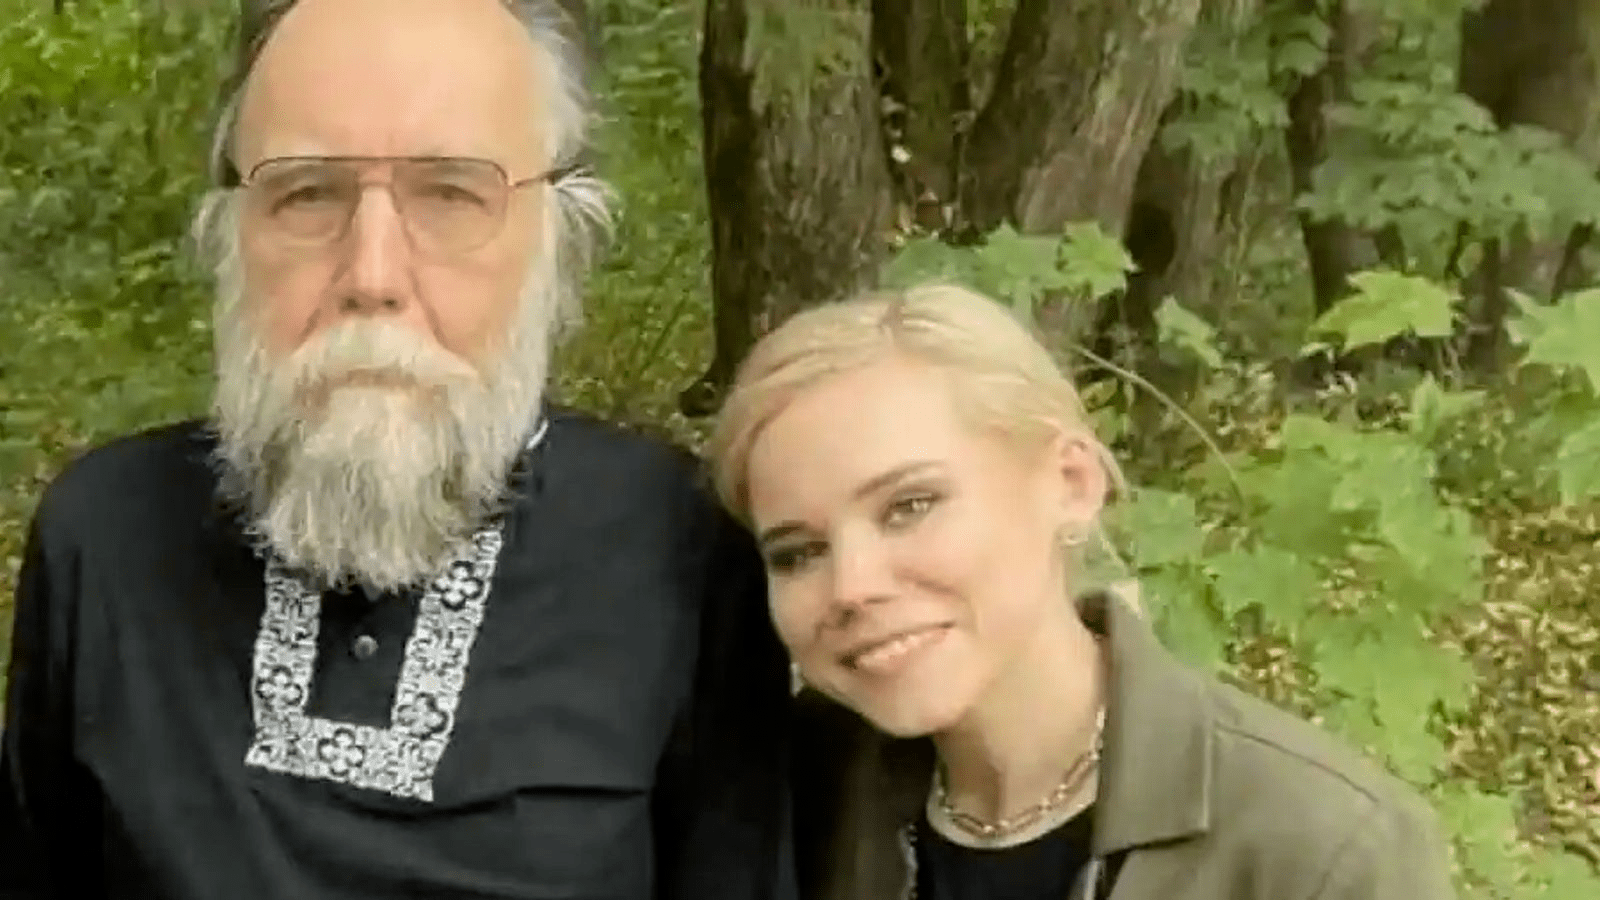 داريا ابنة الكاتب أليكسادير دوغين، الكاتب الروسي المتشدد المقرب من الرئيس فلاديمير بوتين، قُتلت في انفجار سيارة مفخخة على مشارف موسكو.